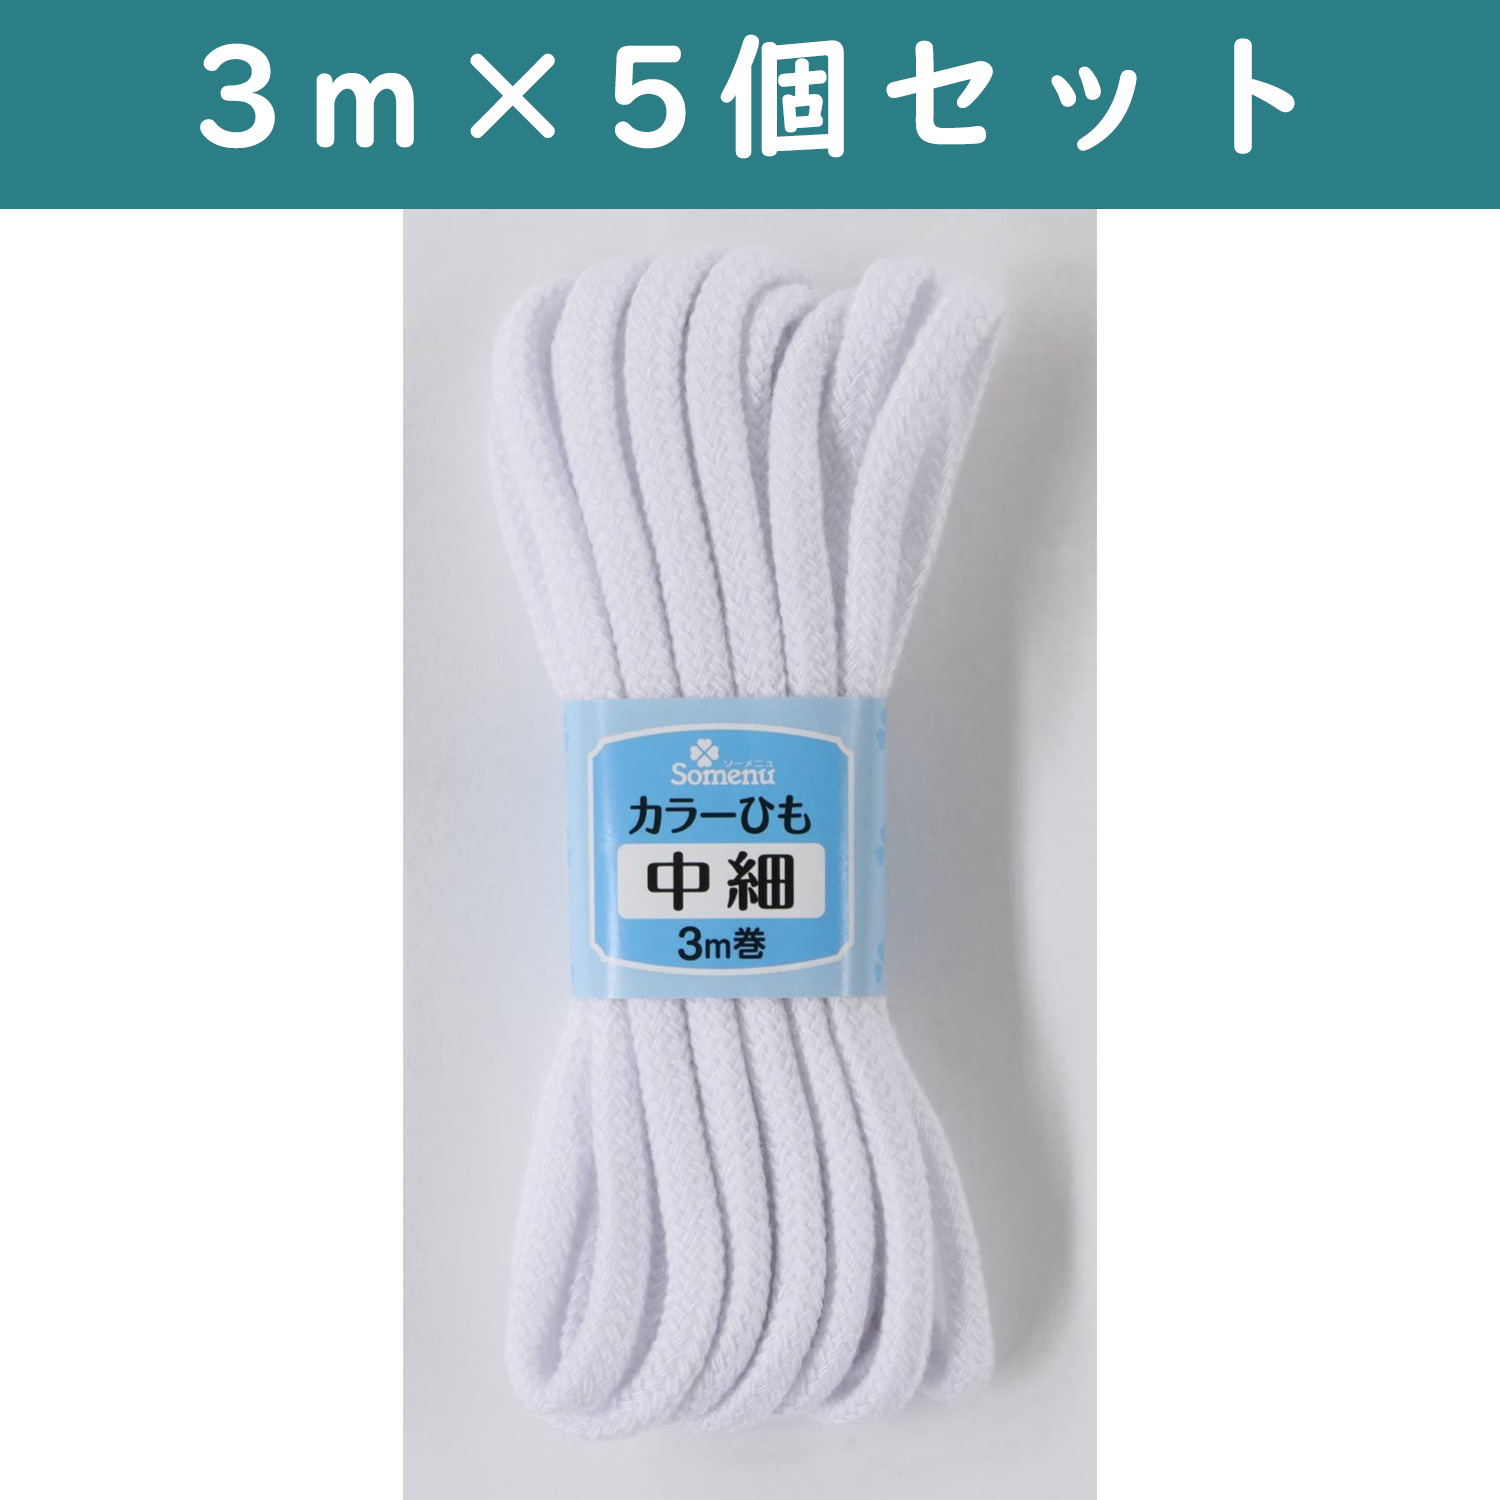 ■【5個】CL26-144-5set カラーひも 中細 3m巻 白 5個セット (セット)